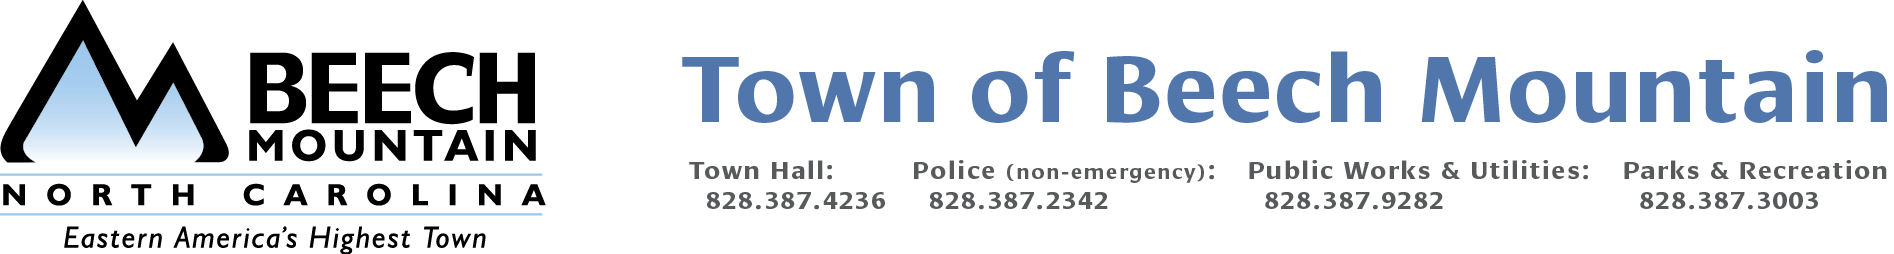 logo for Town of Beech Mountain